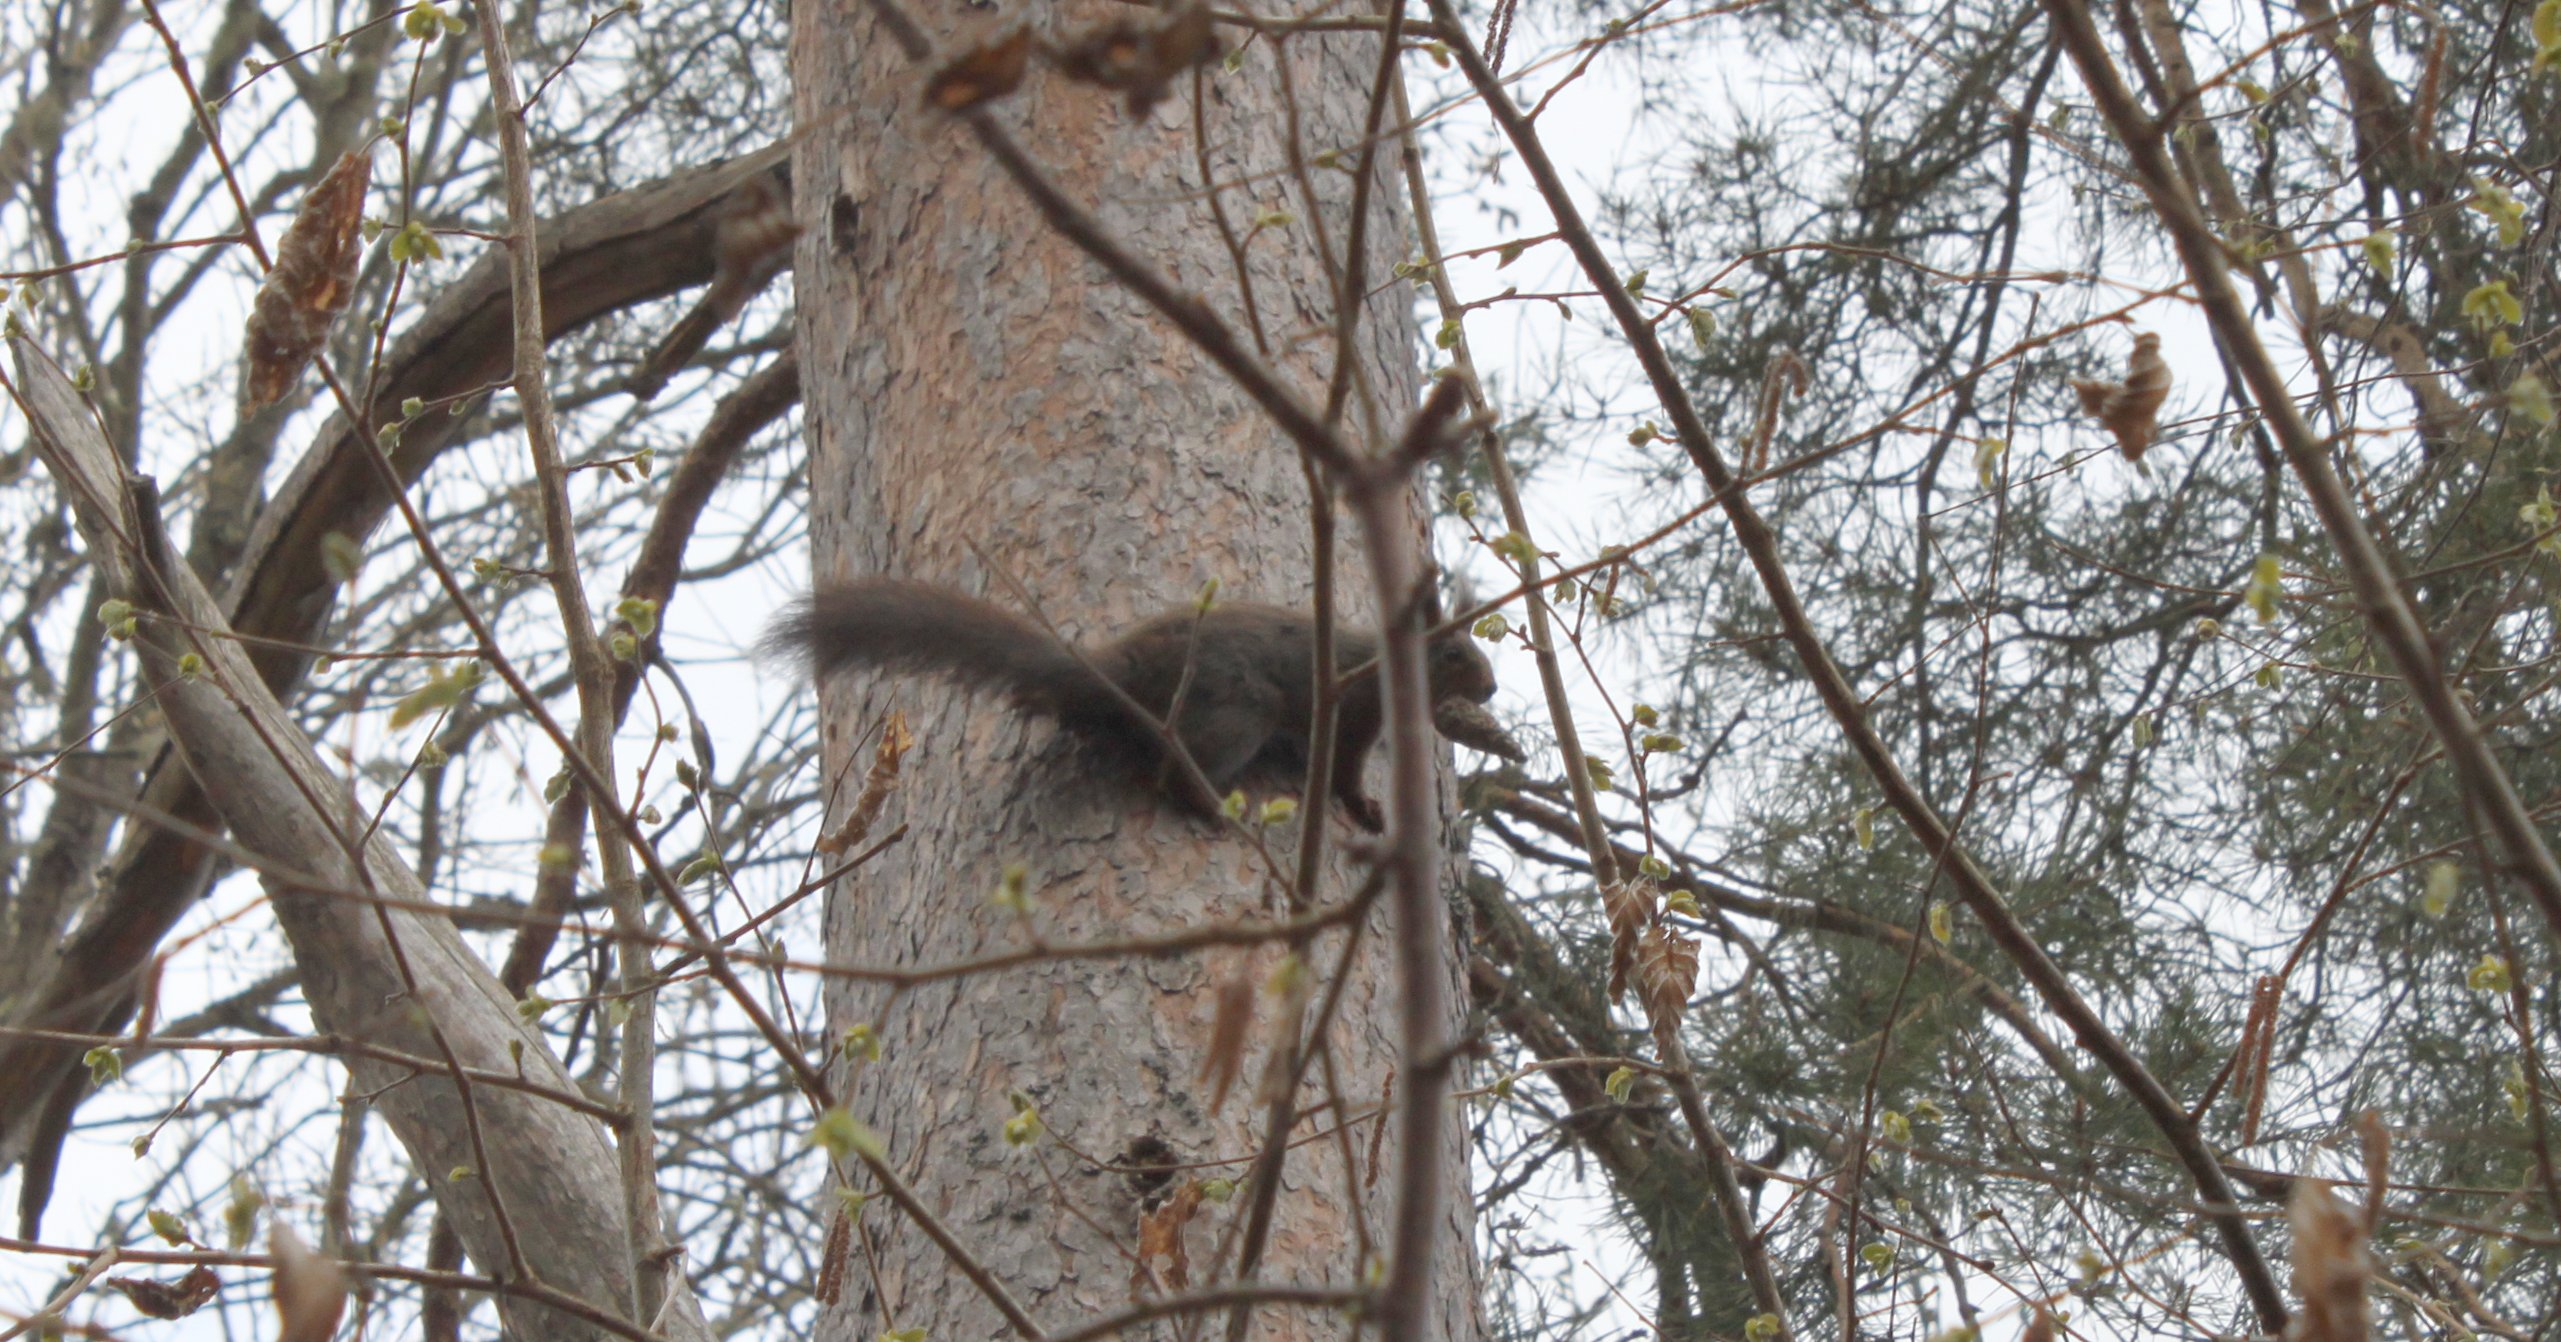 En ekorre med en kotte i munnen sitter på en trädstam.